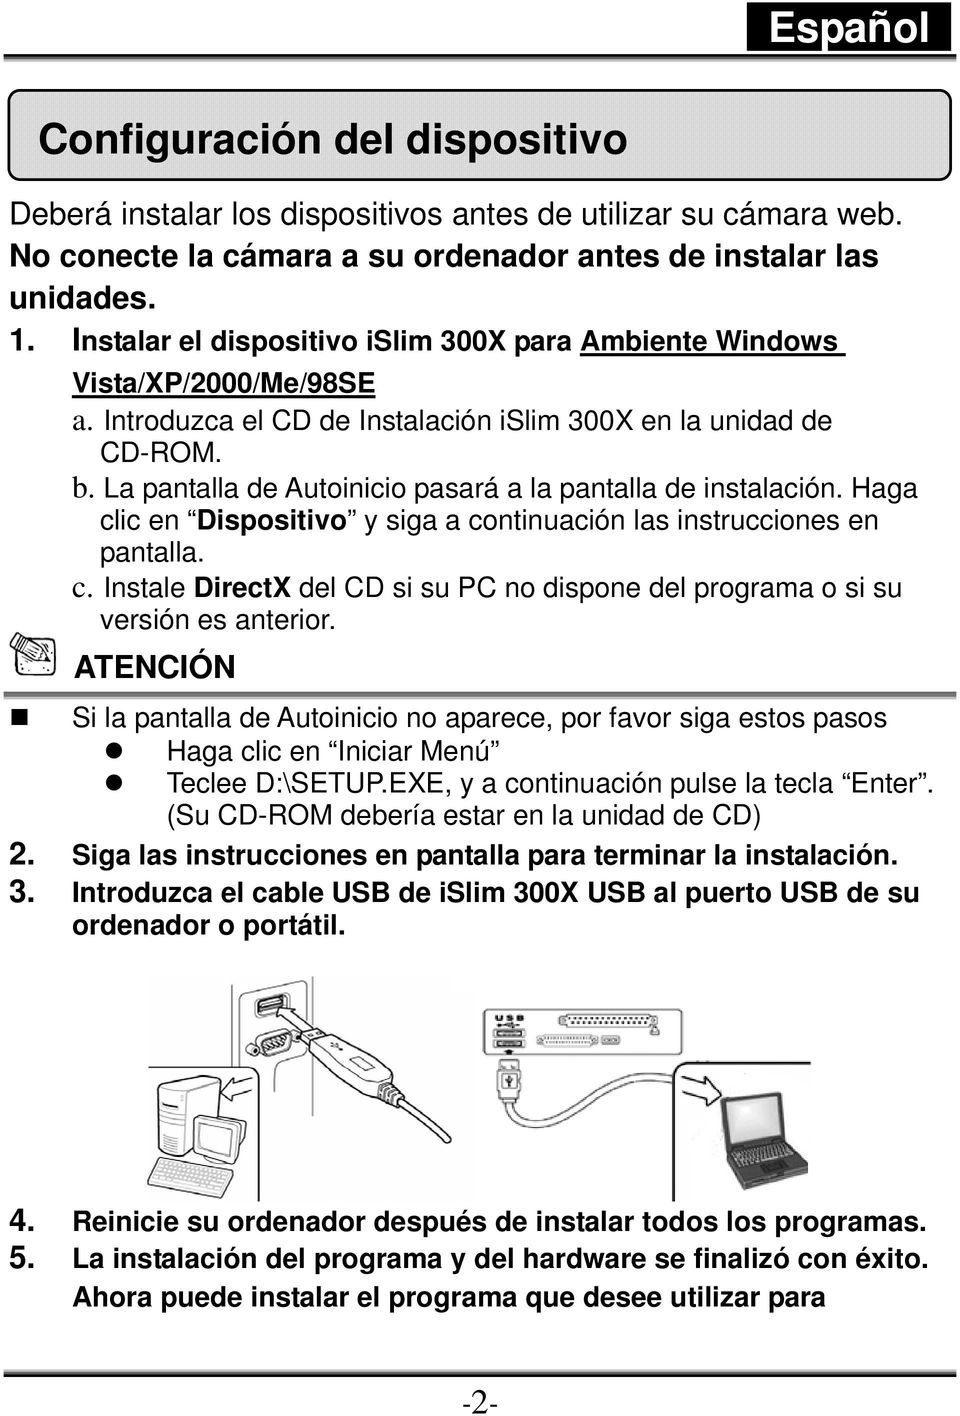 La pantalla de Autoinicio pasará a la pantalla de instalación. Haga clic en Dispositivo y siga a continuación las instrucciones en pantalla. c. Instale DirectX del CD si su PC no dispone del programa o si su versión es anterior.